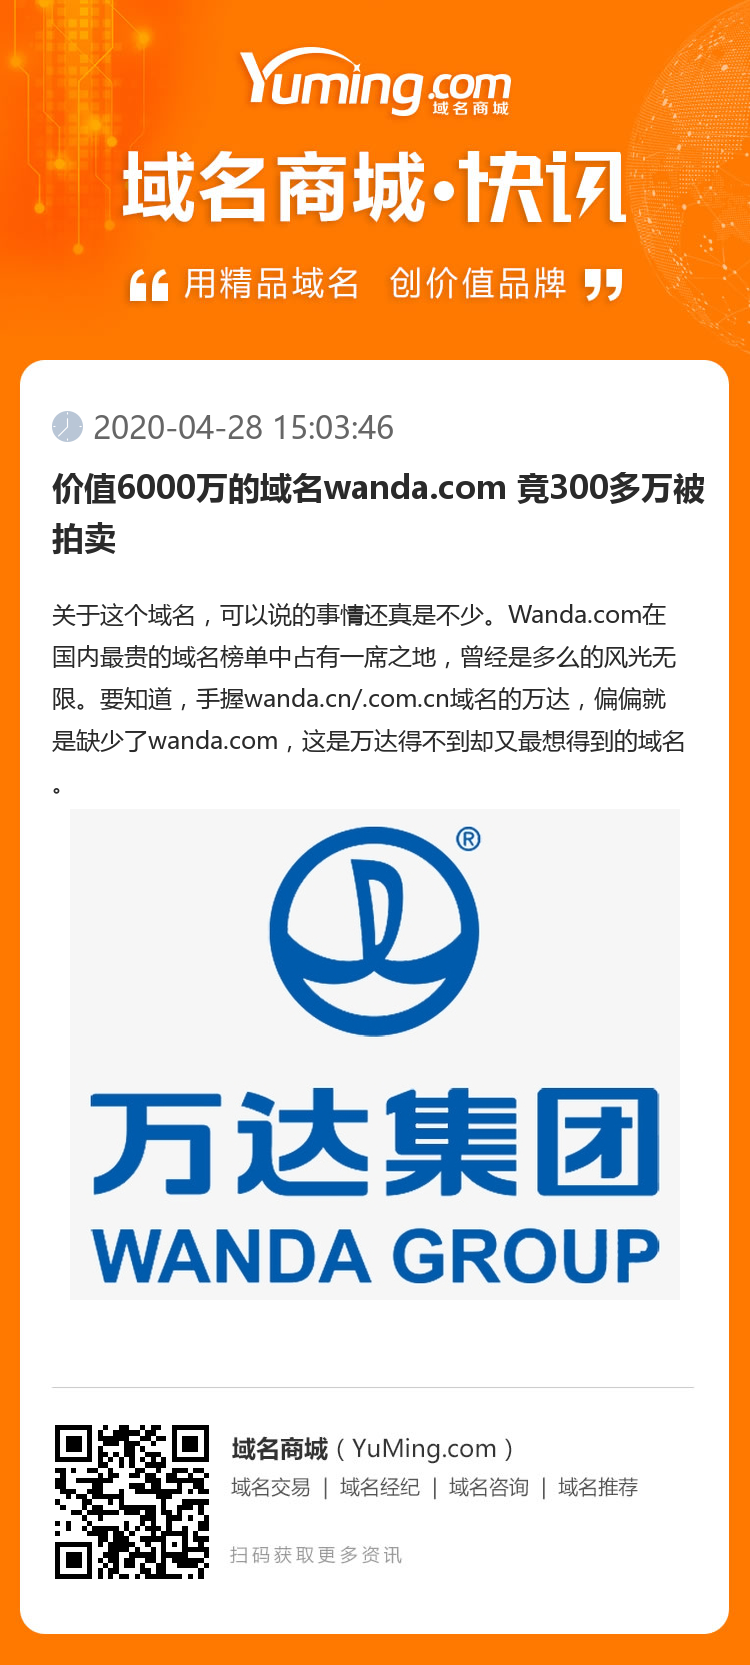 价值6000万的域名wanda.com 竟300多万被拍卖